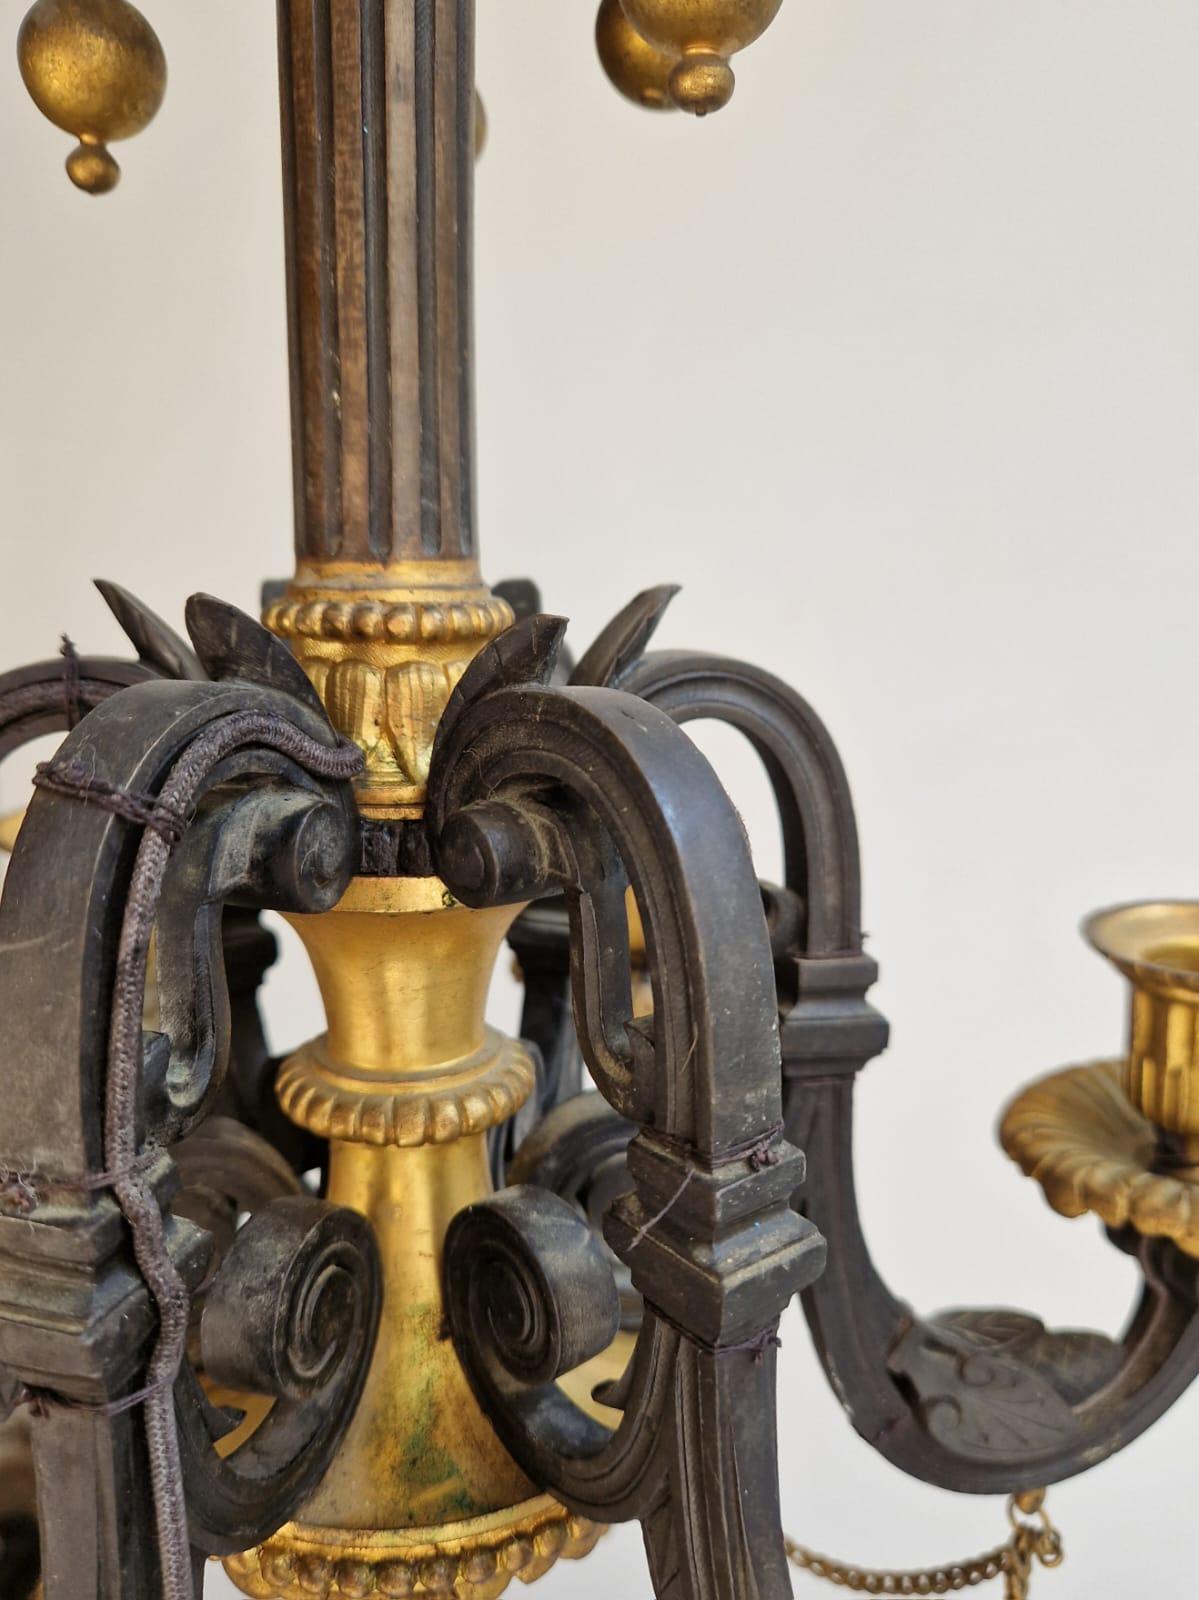 Très beau lustre à 6 appliques en bronze patiné et doré, décoré de feuillages stylisés, de sphères suspendues, de pommes de pin. Vers 1840. En très bon état, notre lustre a été percé pour l'électricité. Ce modèle charmant et très élégant est